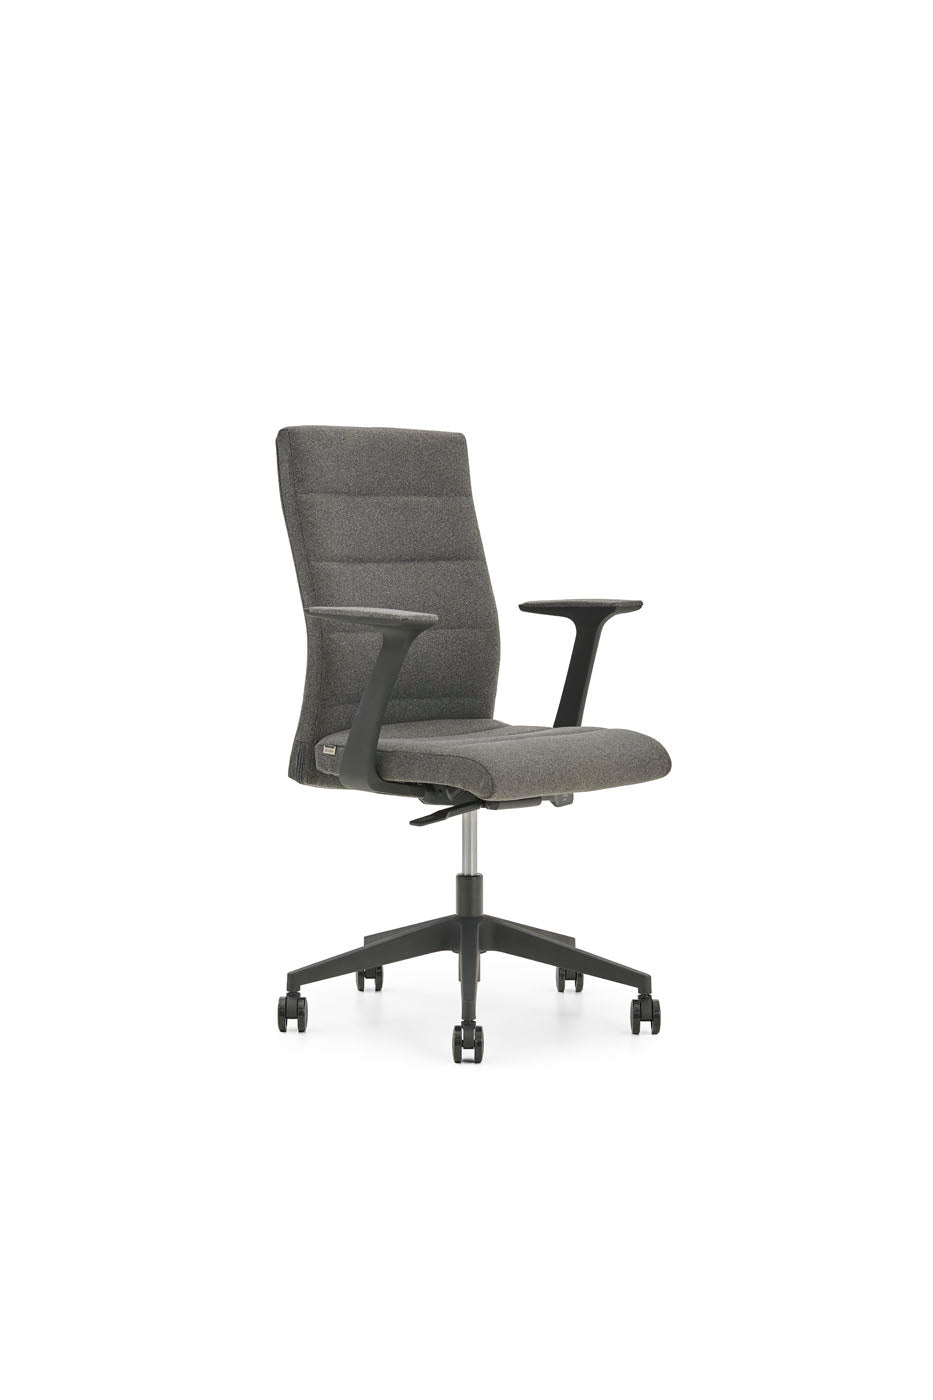 Tunn Office Chair